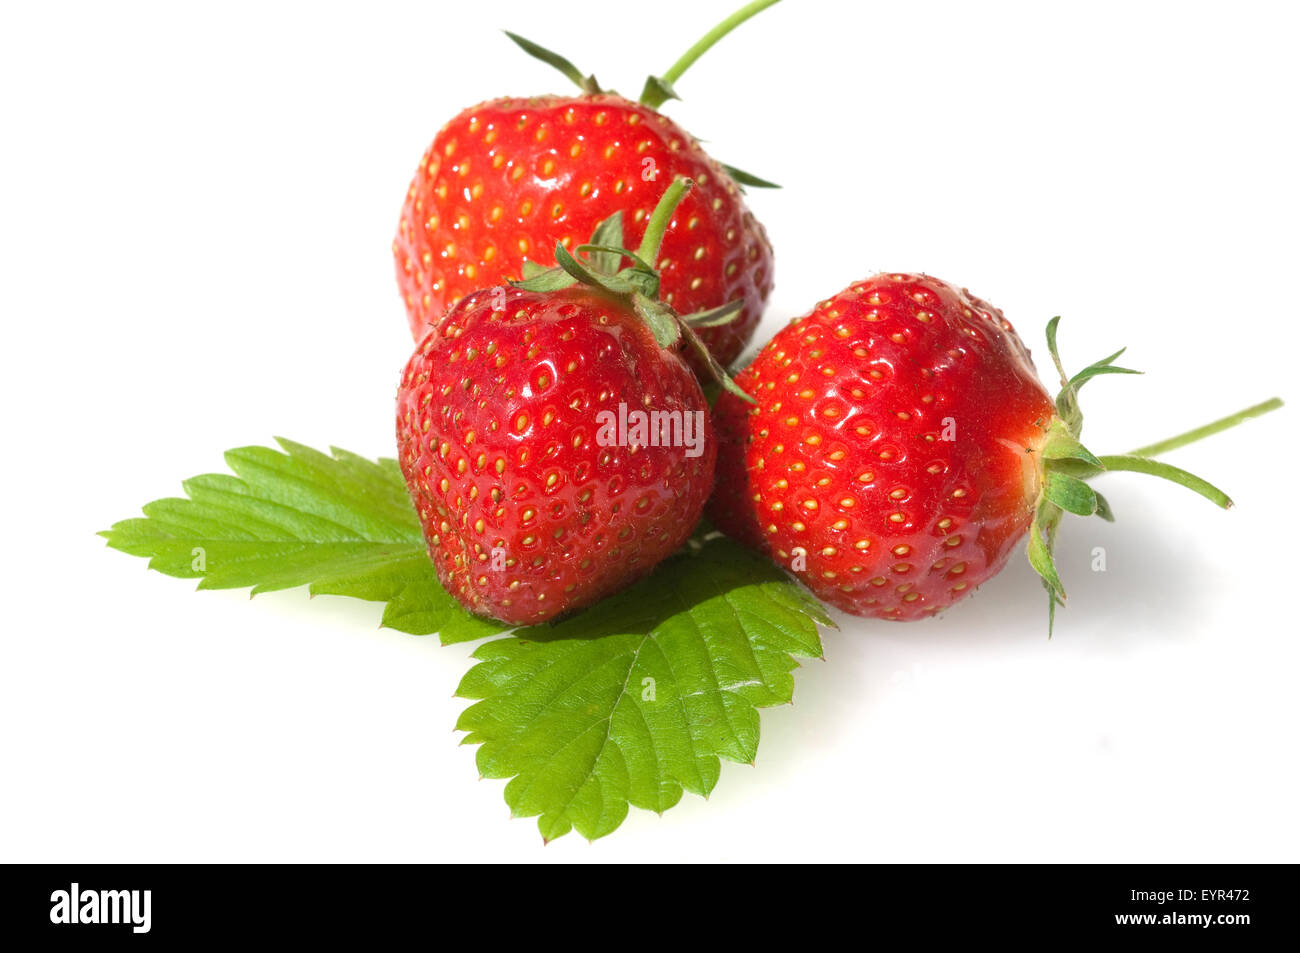 Erdbeere, Fragaria x ananassa, Beerenobst, Stock Photo